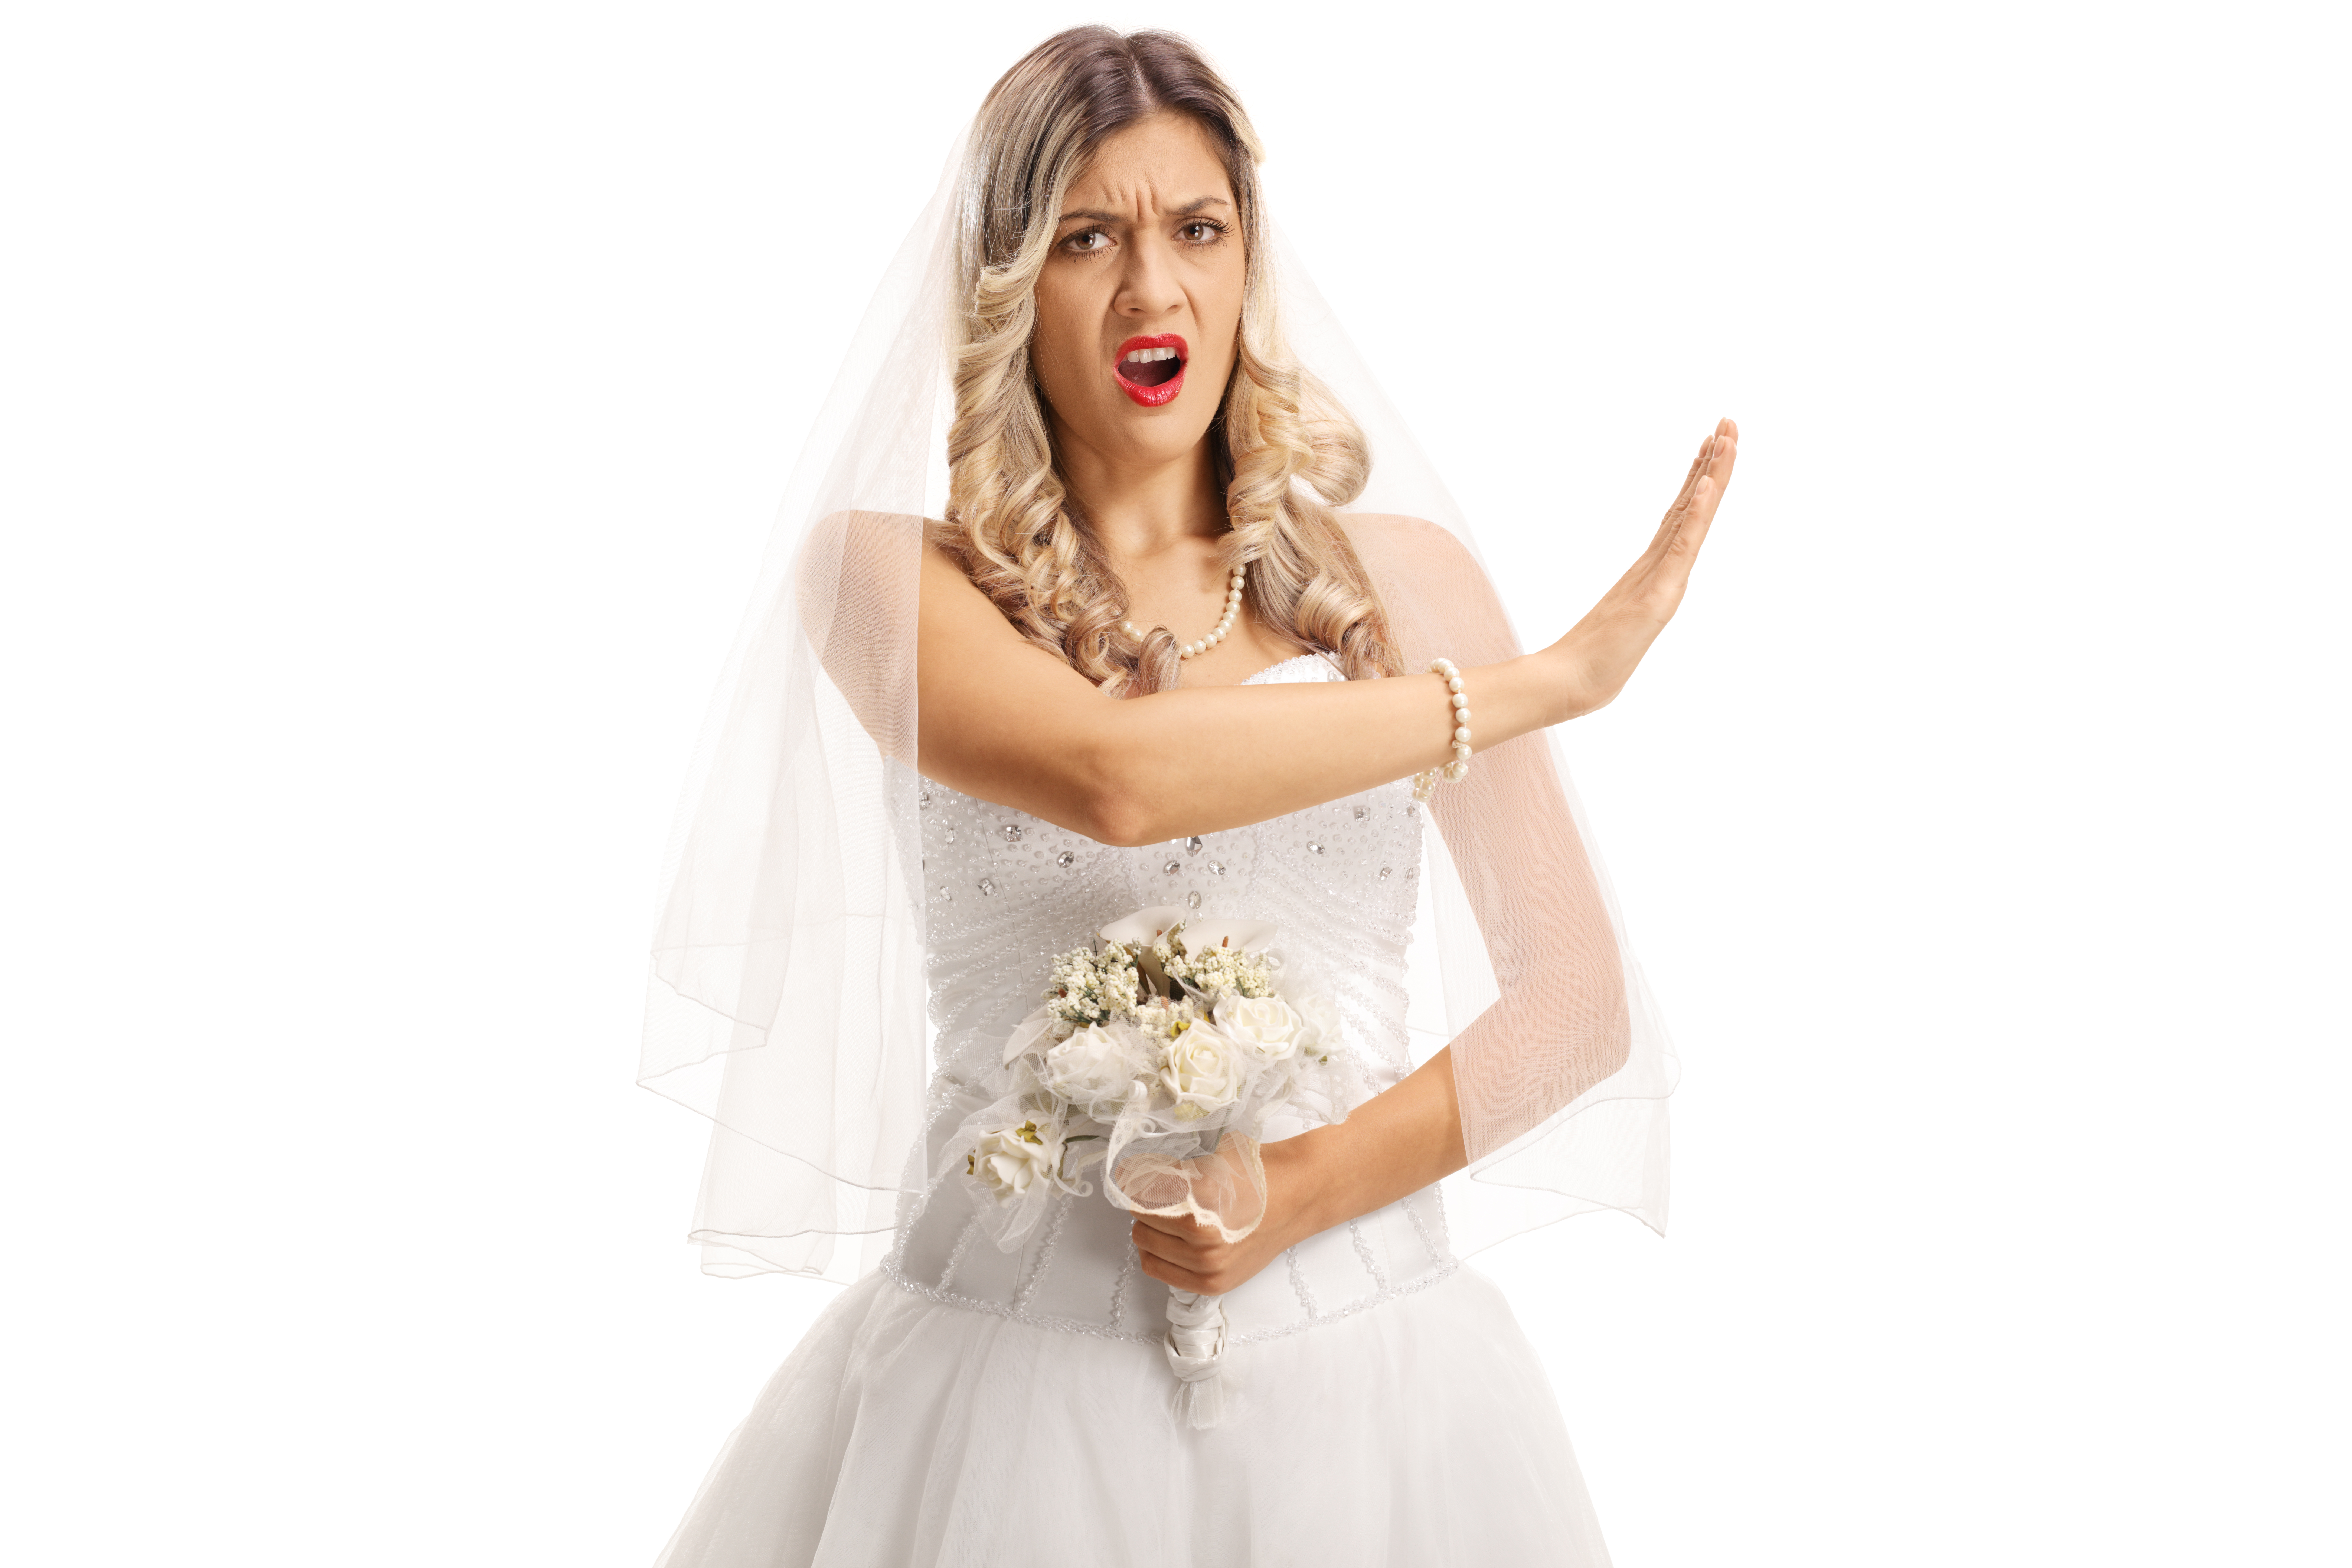 Une mariée en colère qui réprimande quelqu'un | Source : Shutterstock